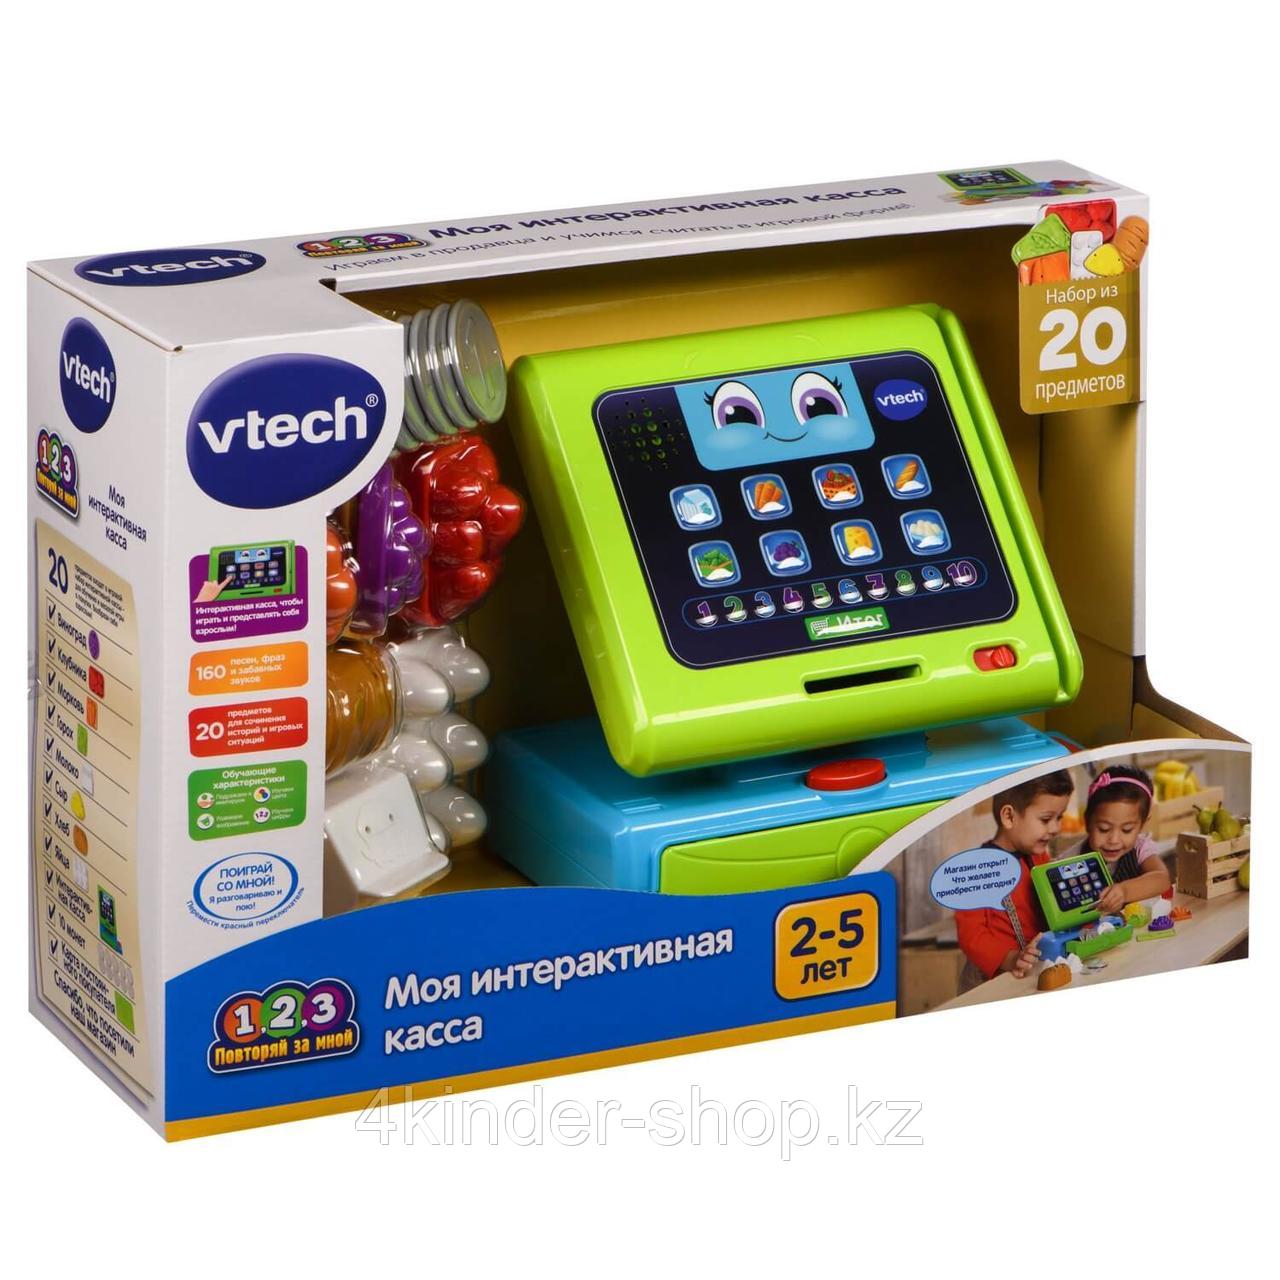 Игрушка Vtech Моя касса интерактивная 80-81673R